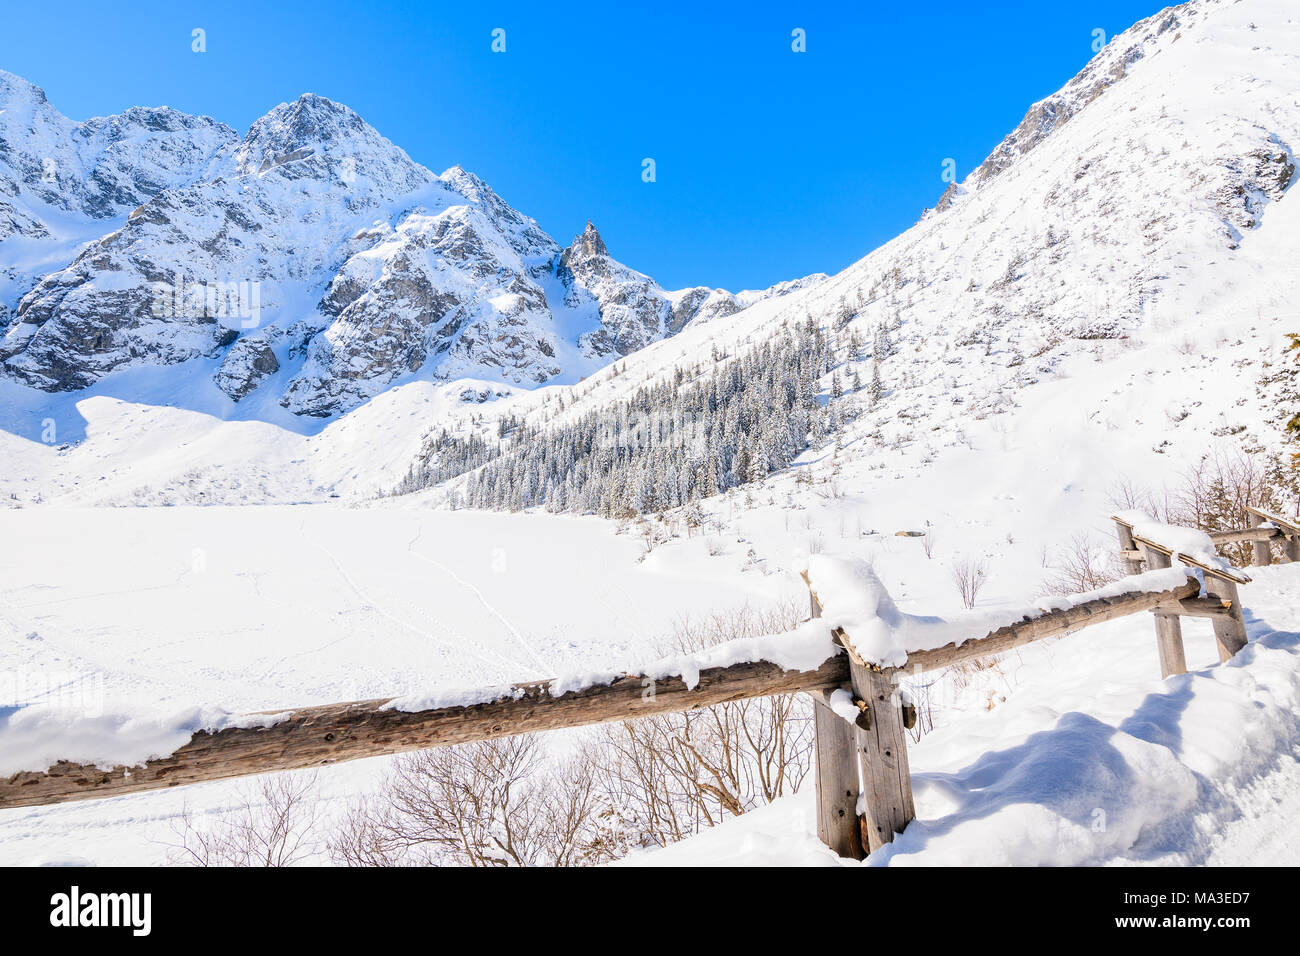 Le lac Morskie Oko gelé en hiver, les montagnes Tatras, Pologne Banque D'Images